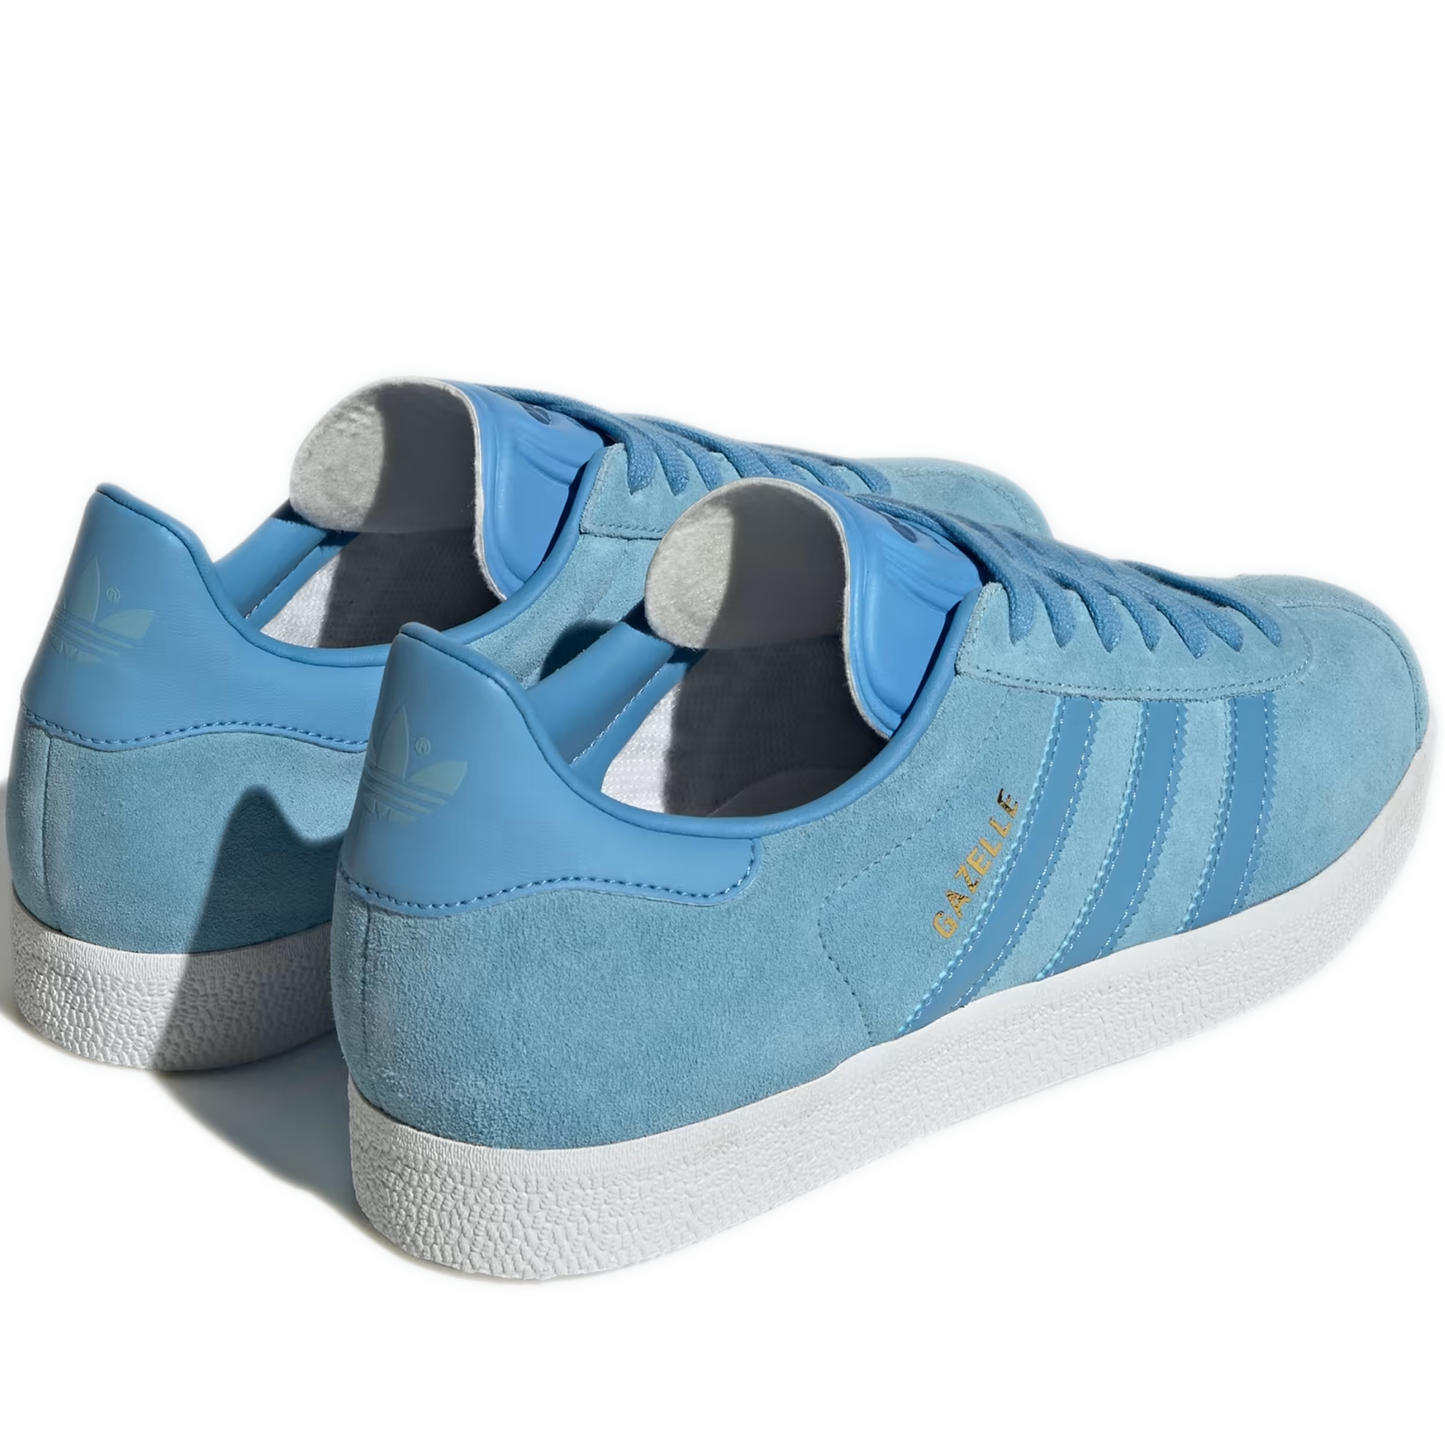 Men's Adidas Gazelle Shoes - Clear Blue / Light Blue / Off White